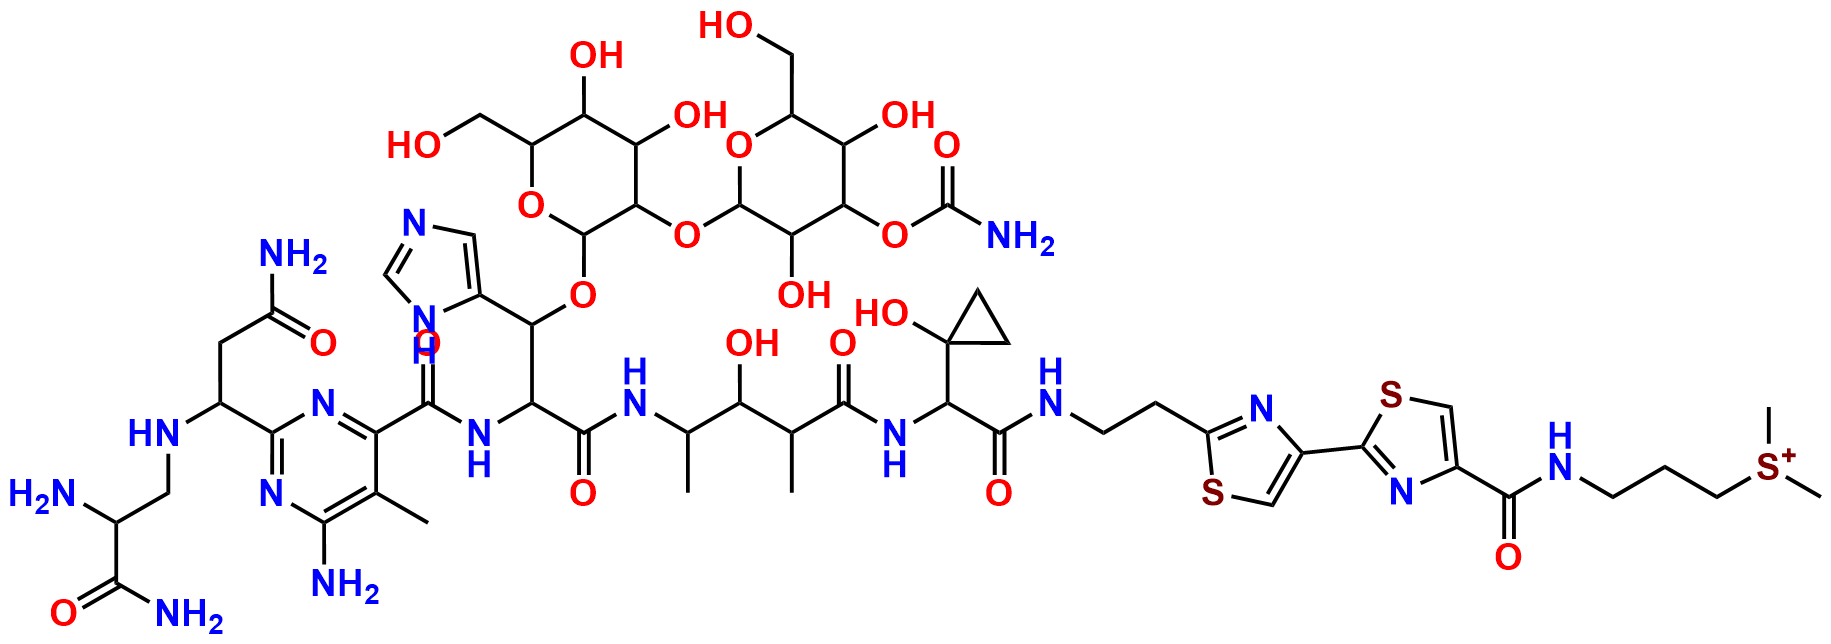 Cleomycin A2